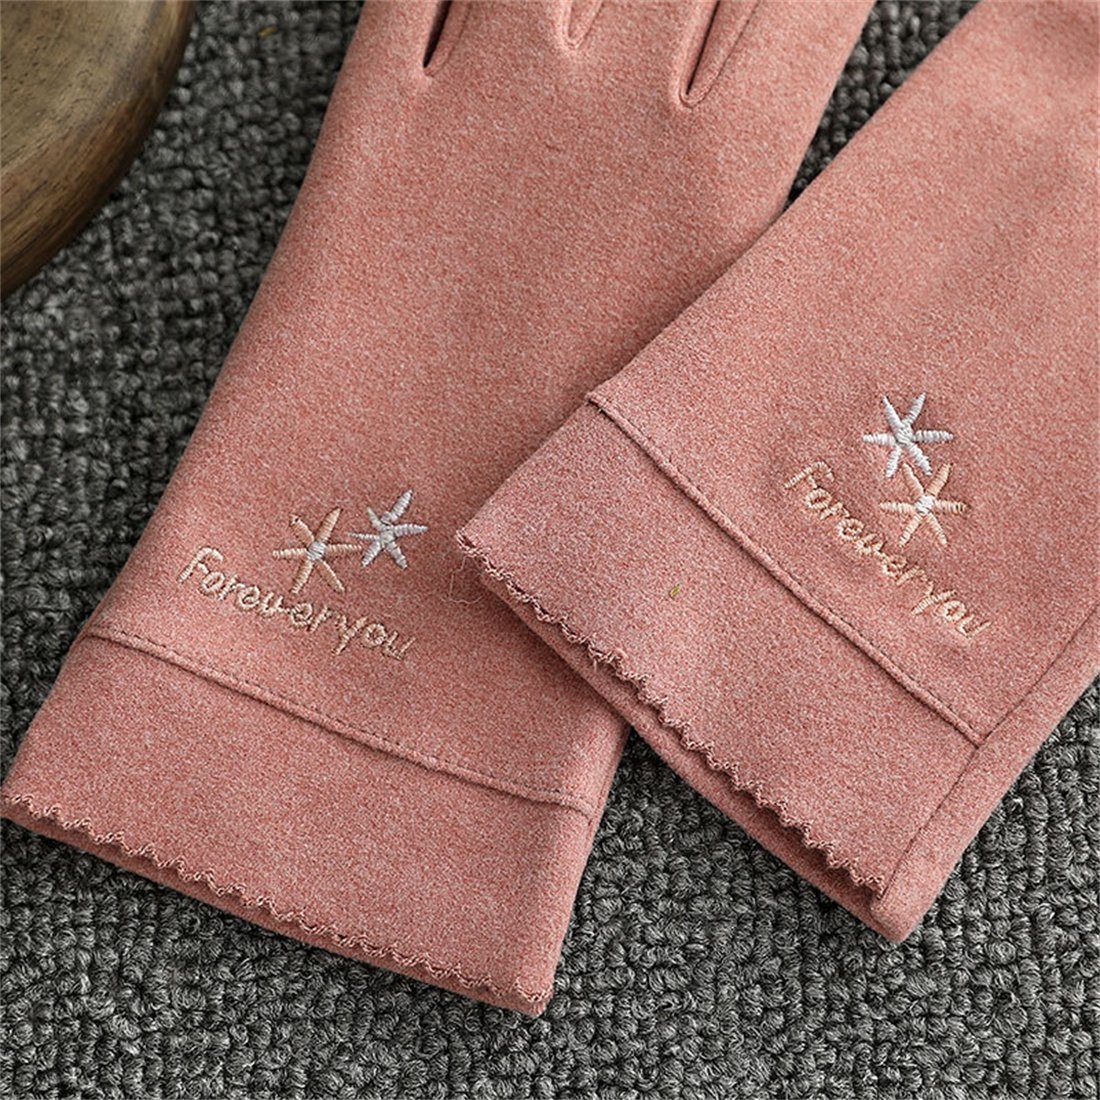 DÖRÖY Fleecehandschuhe Damenmode Touchscreen Winter Rosa Warme Handschuhe Reithandschuhe